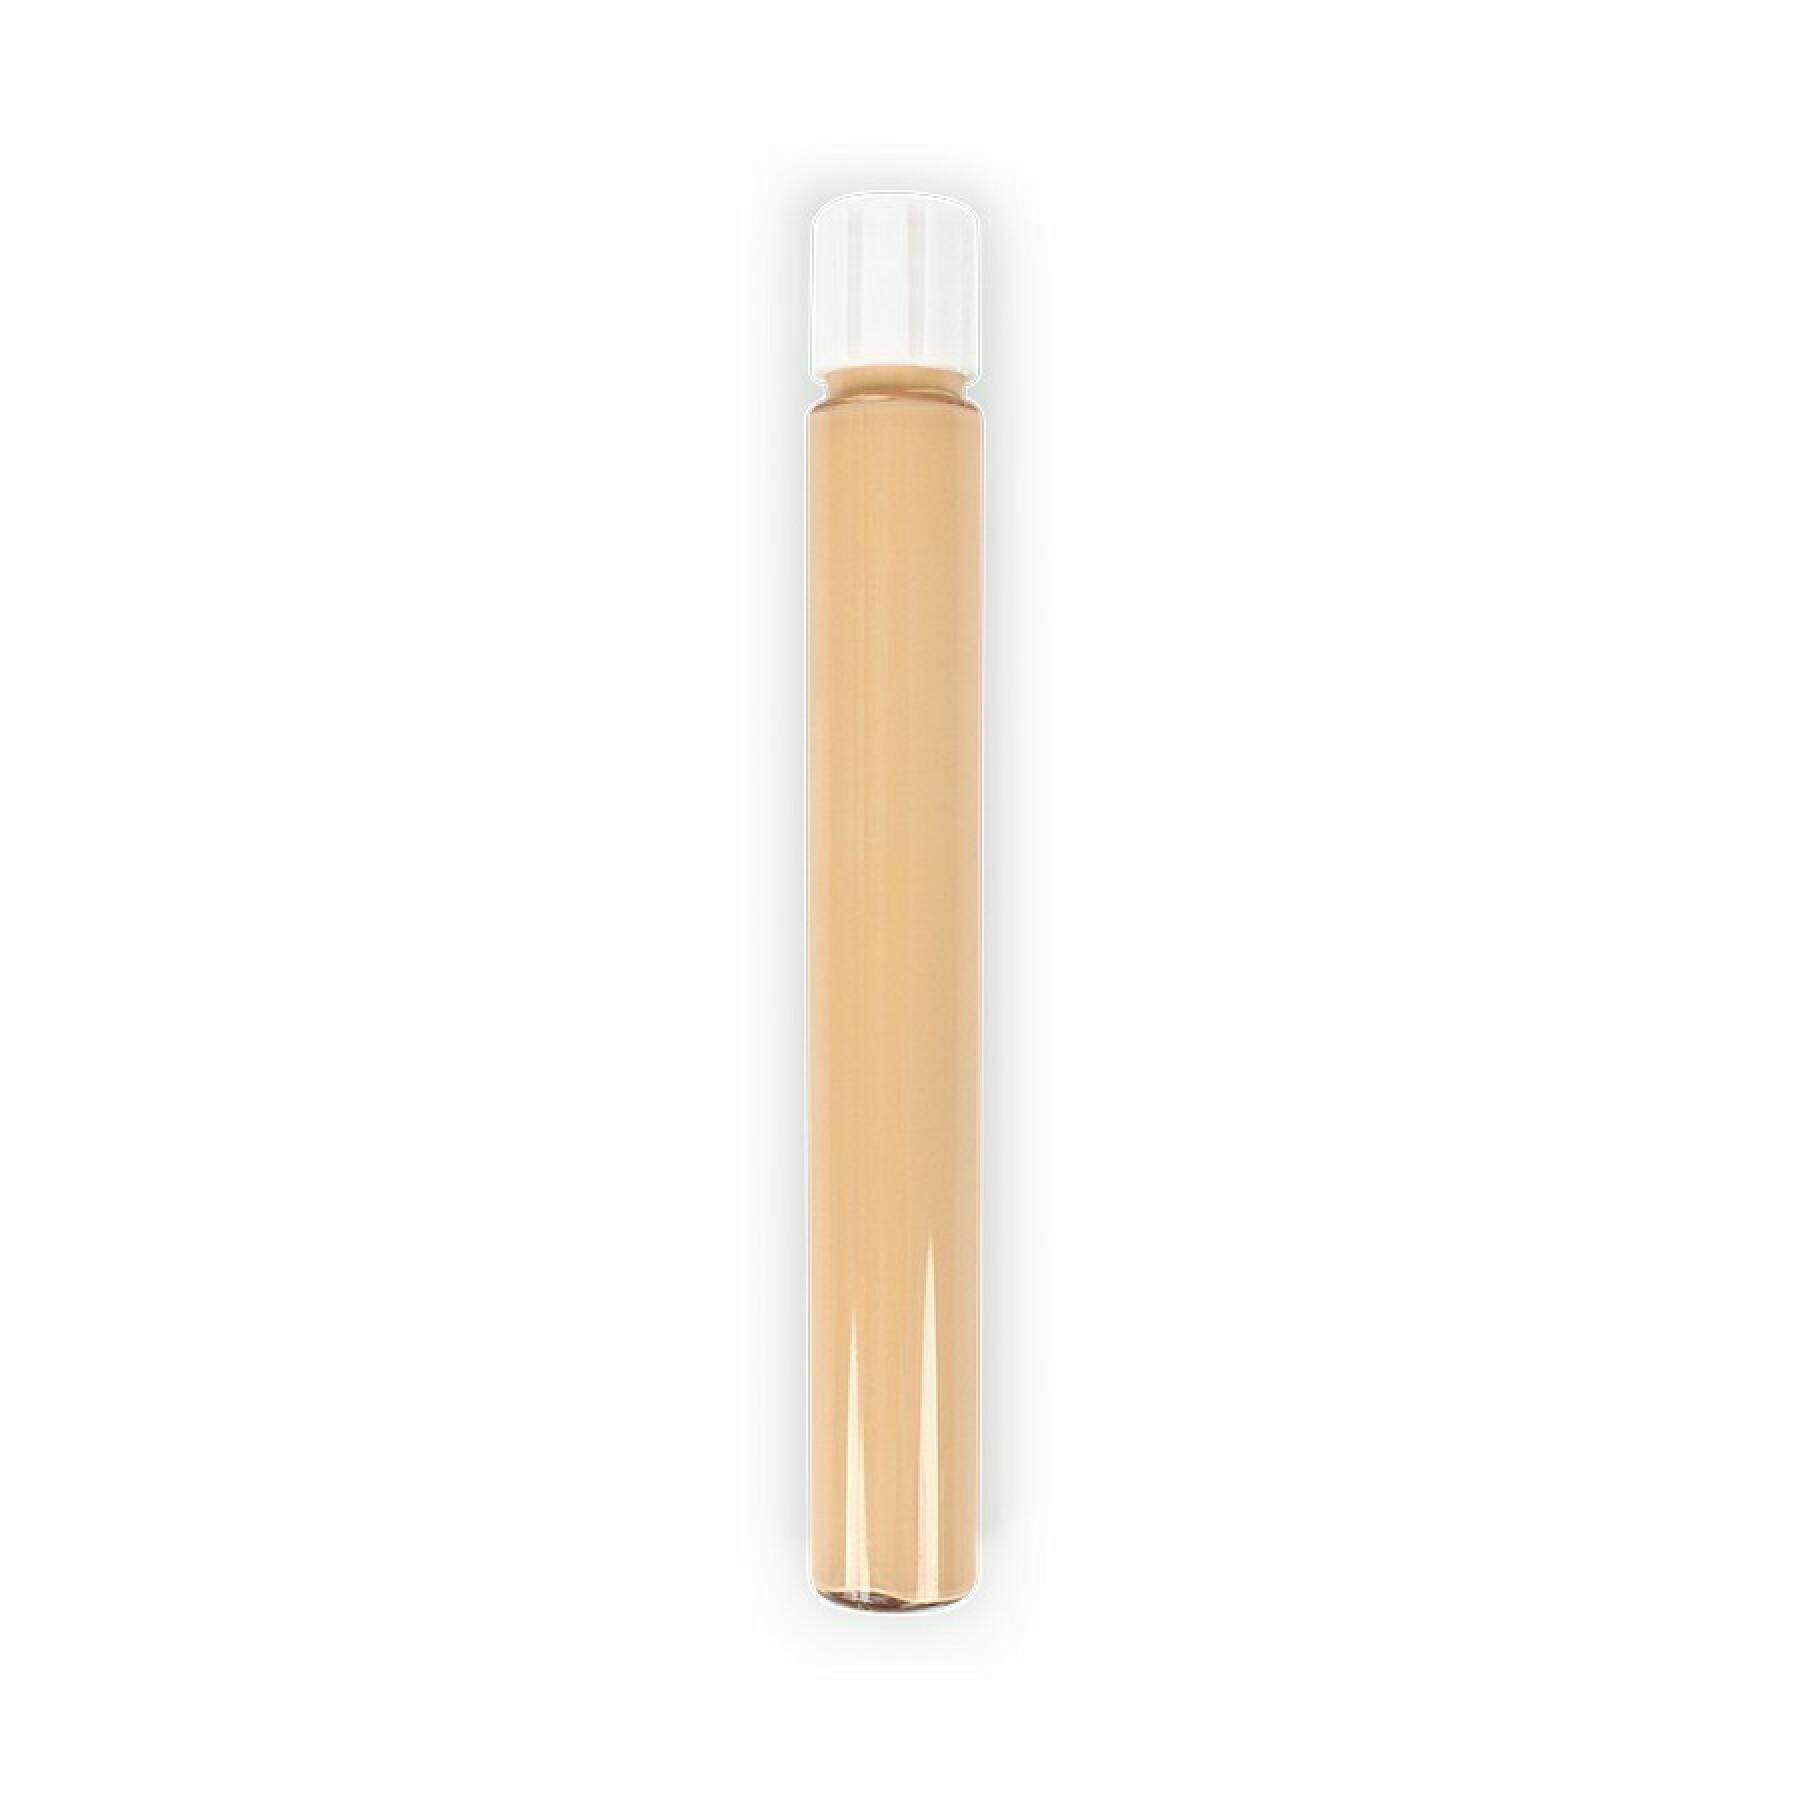 Fluid concealer refill 792 beige sandy woman Zao - 7 ml